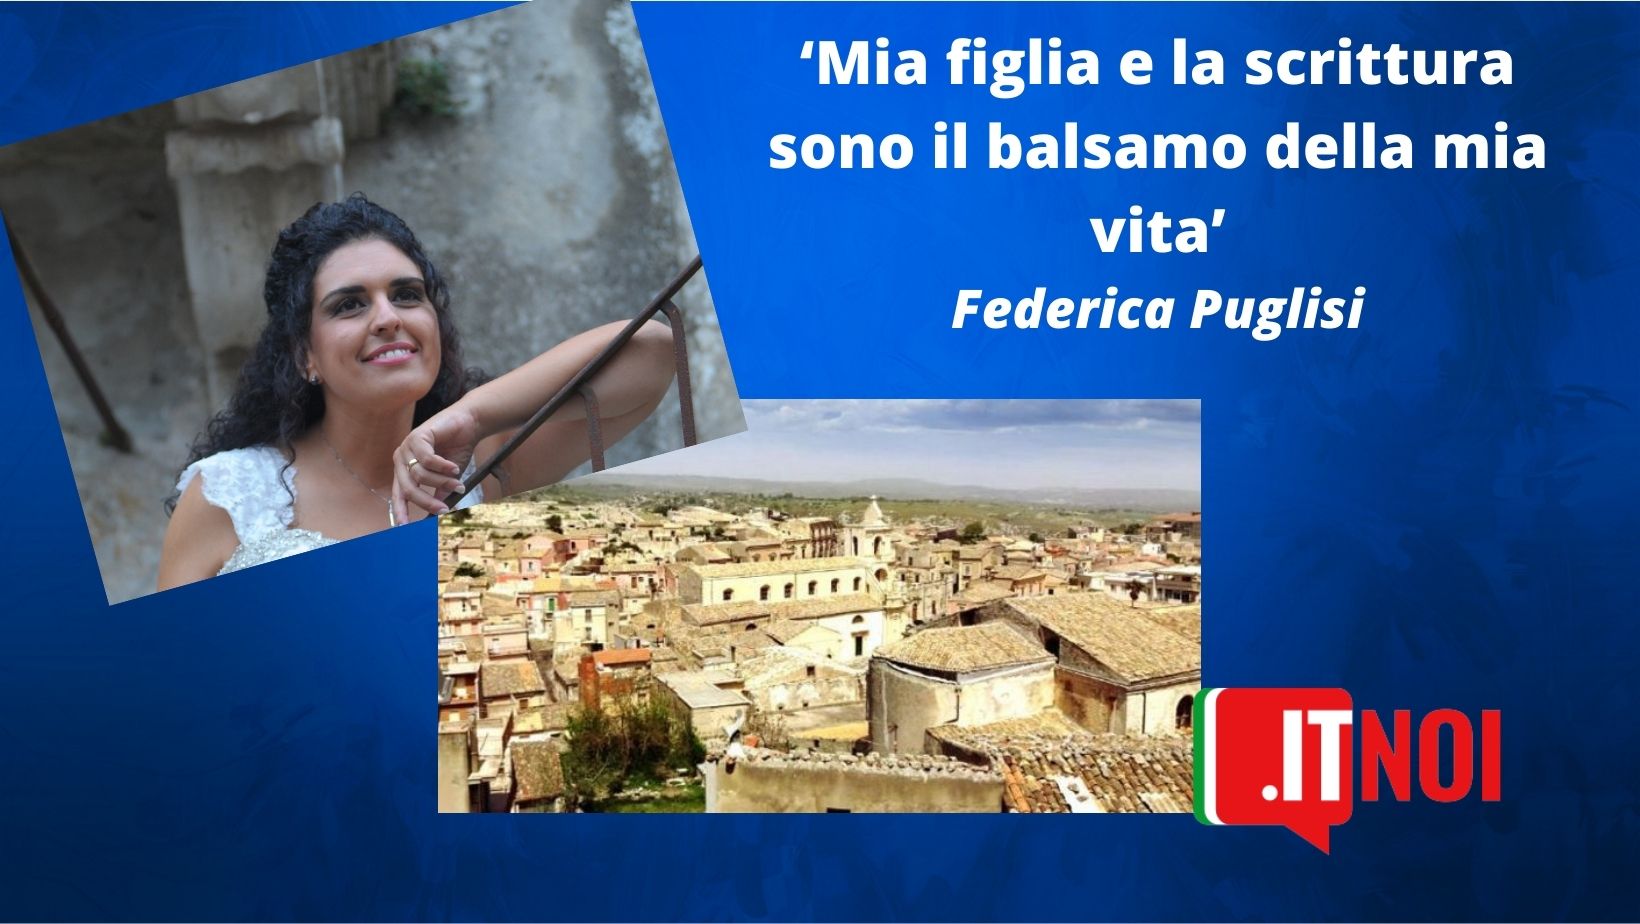 Federica Puglisi, itSicilia: la scrittura per trasmettere la passione per la mia terra